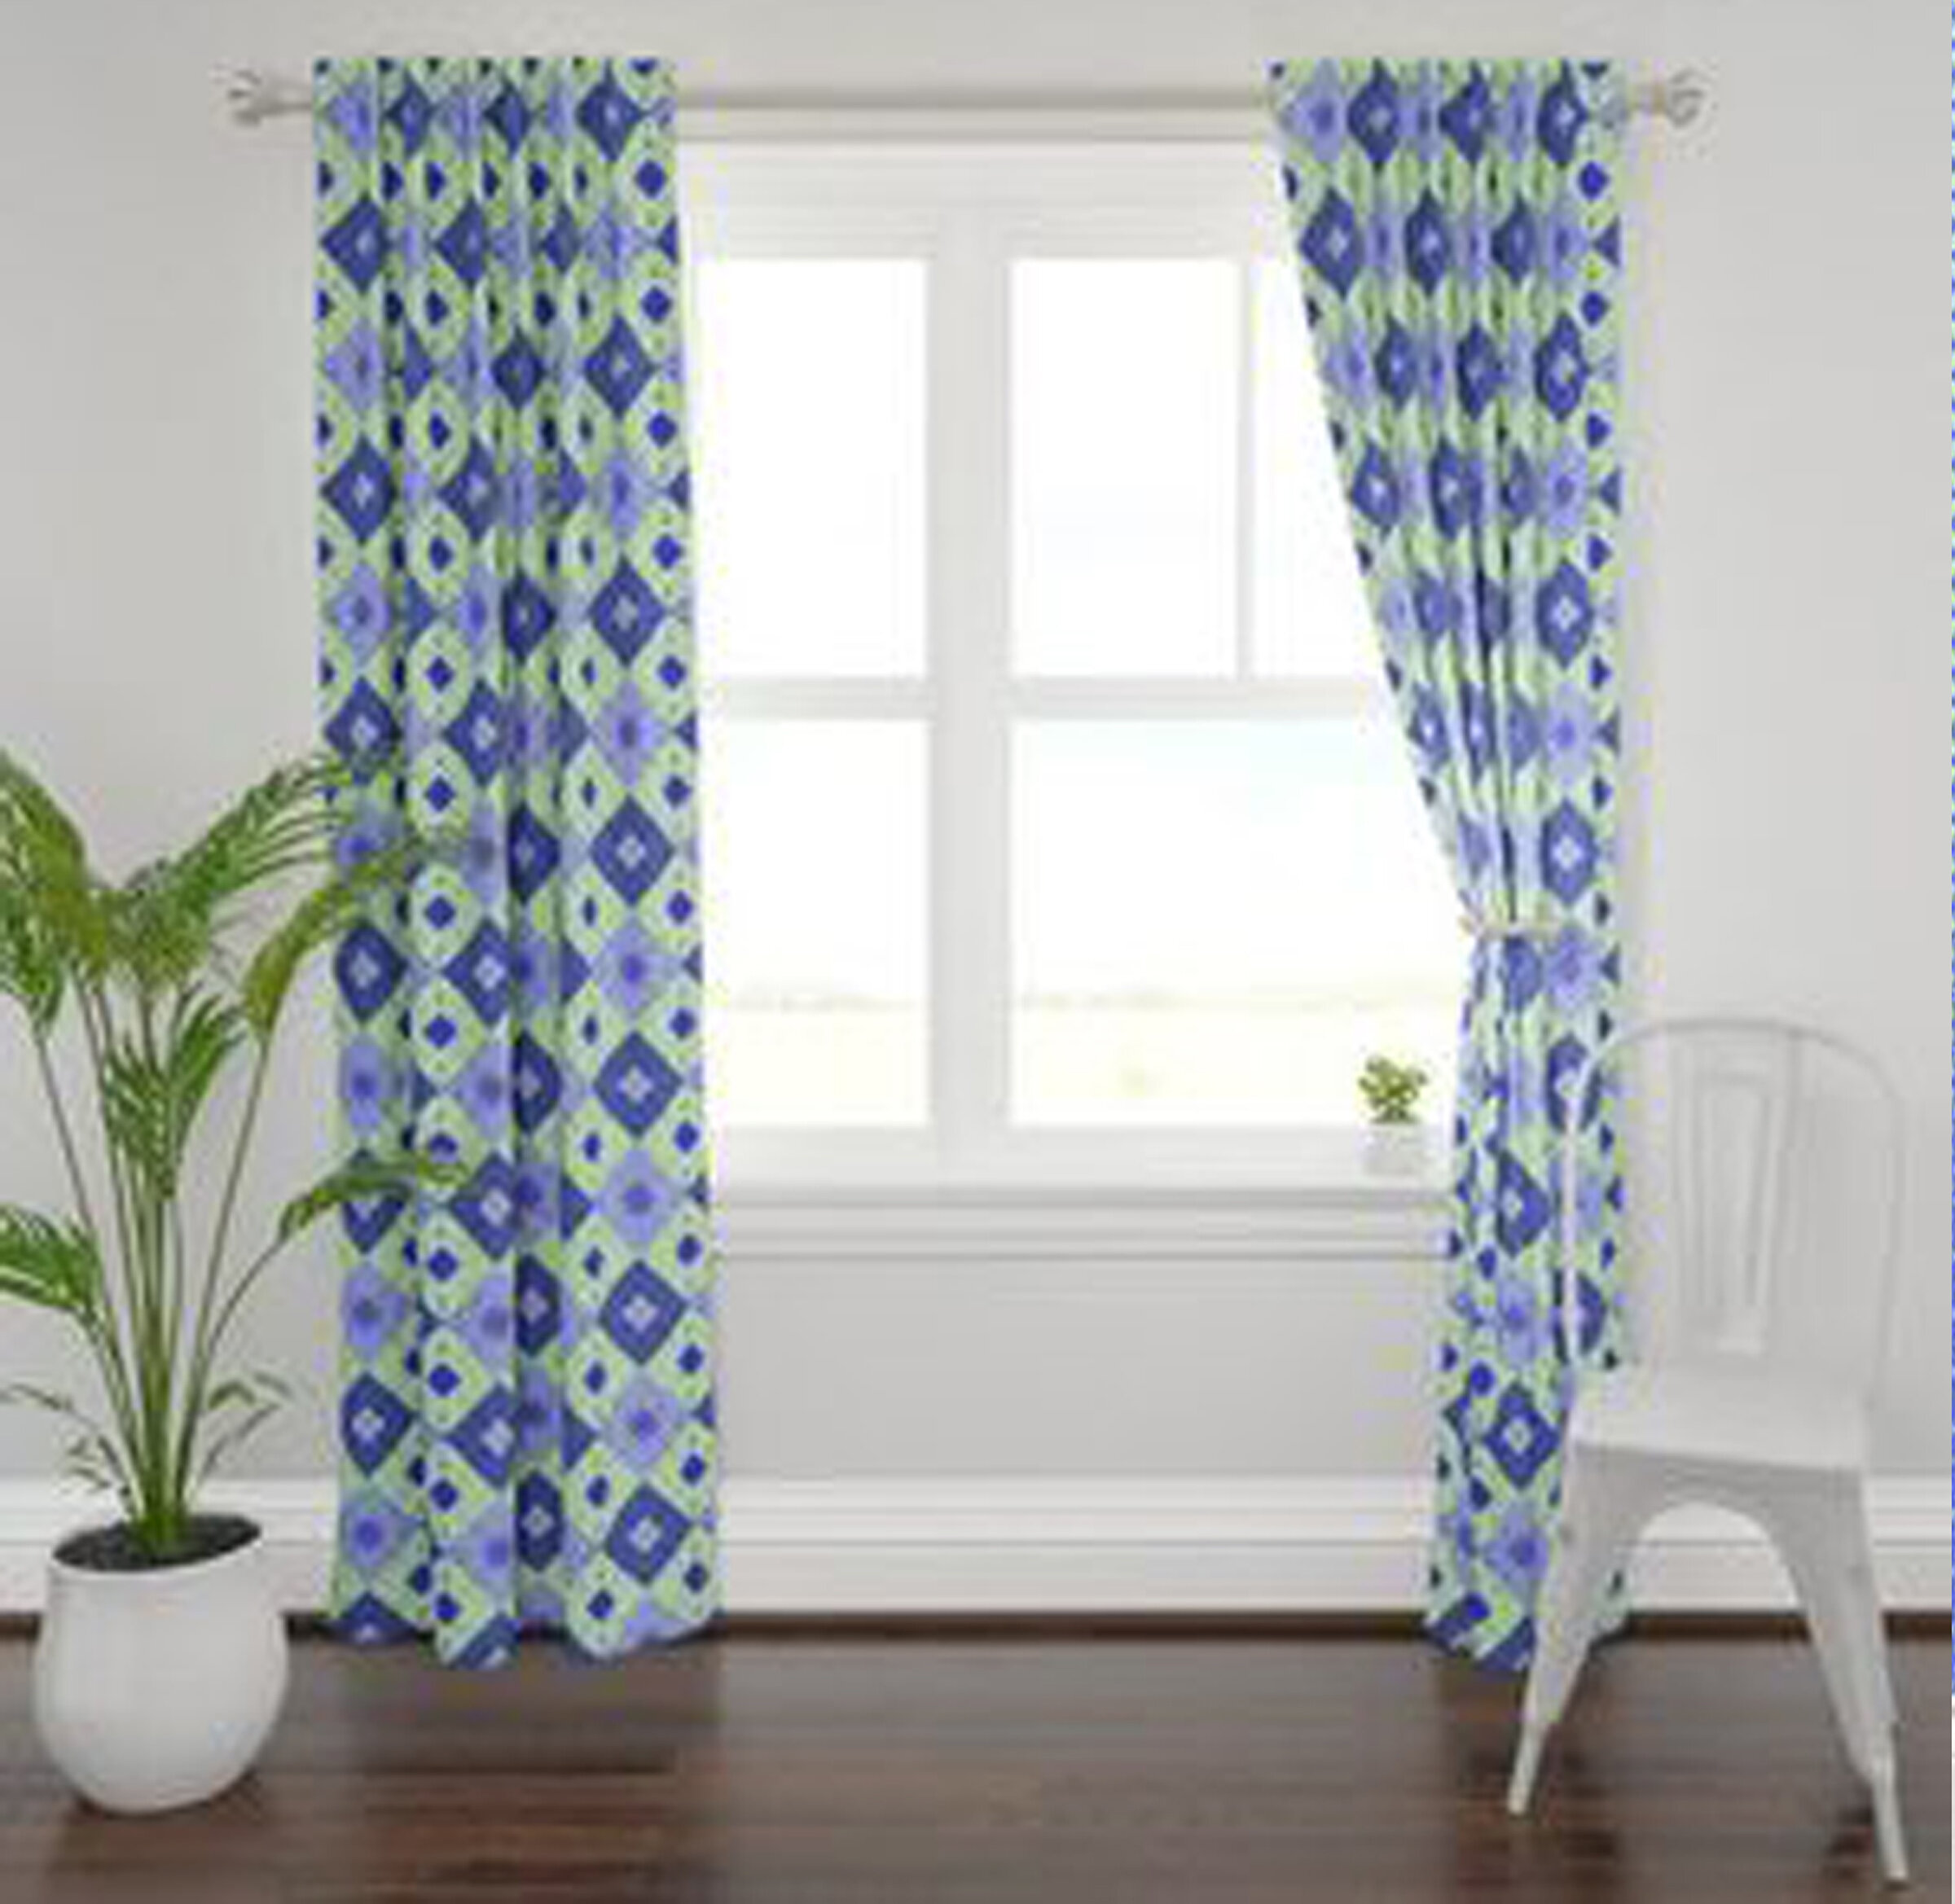 9a. Argyle curtains.jpg